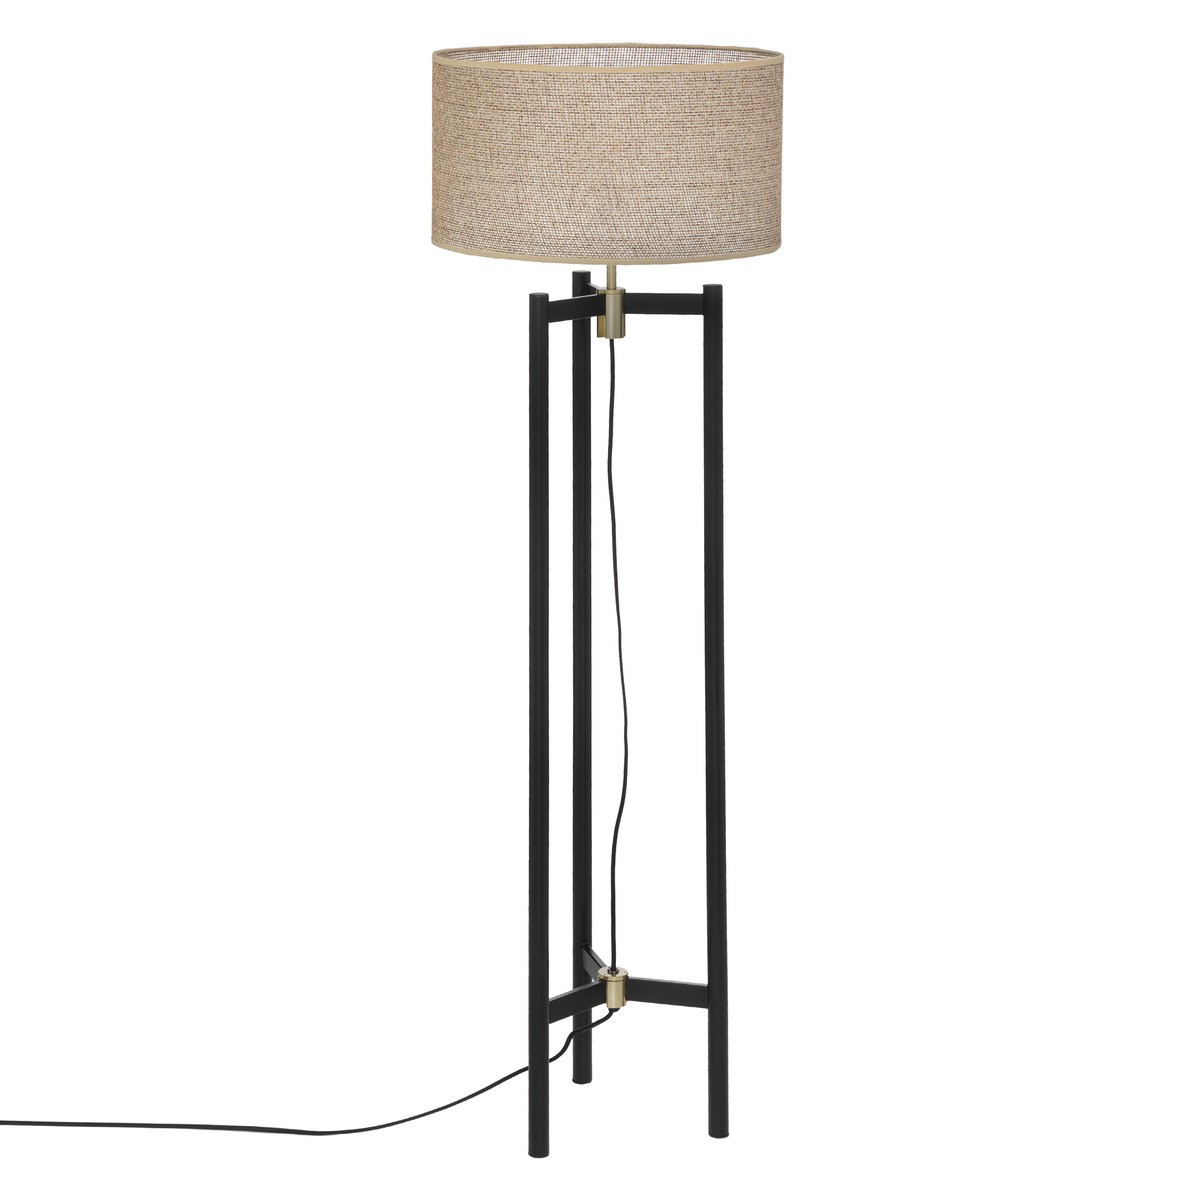 Lampe trépied H54cm FIBI - Noir doré - Veo shop